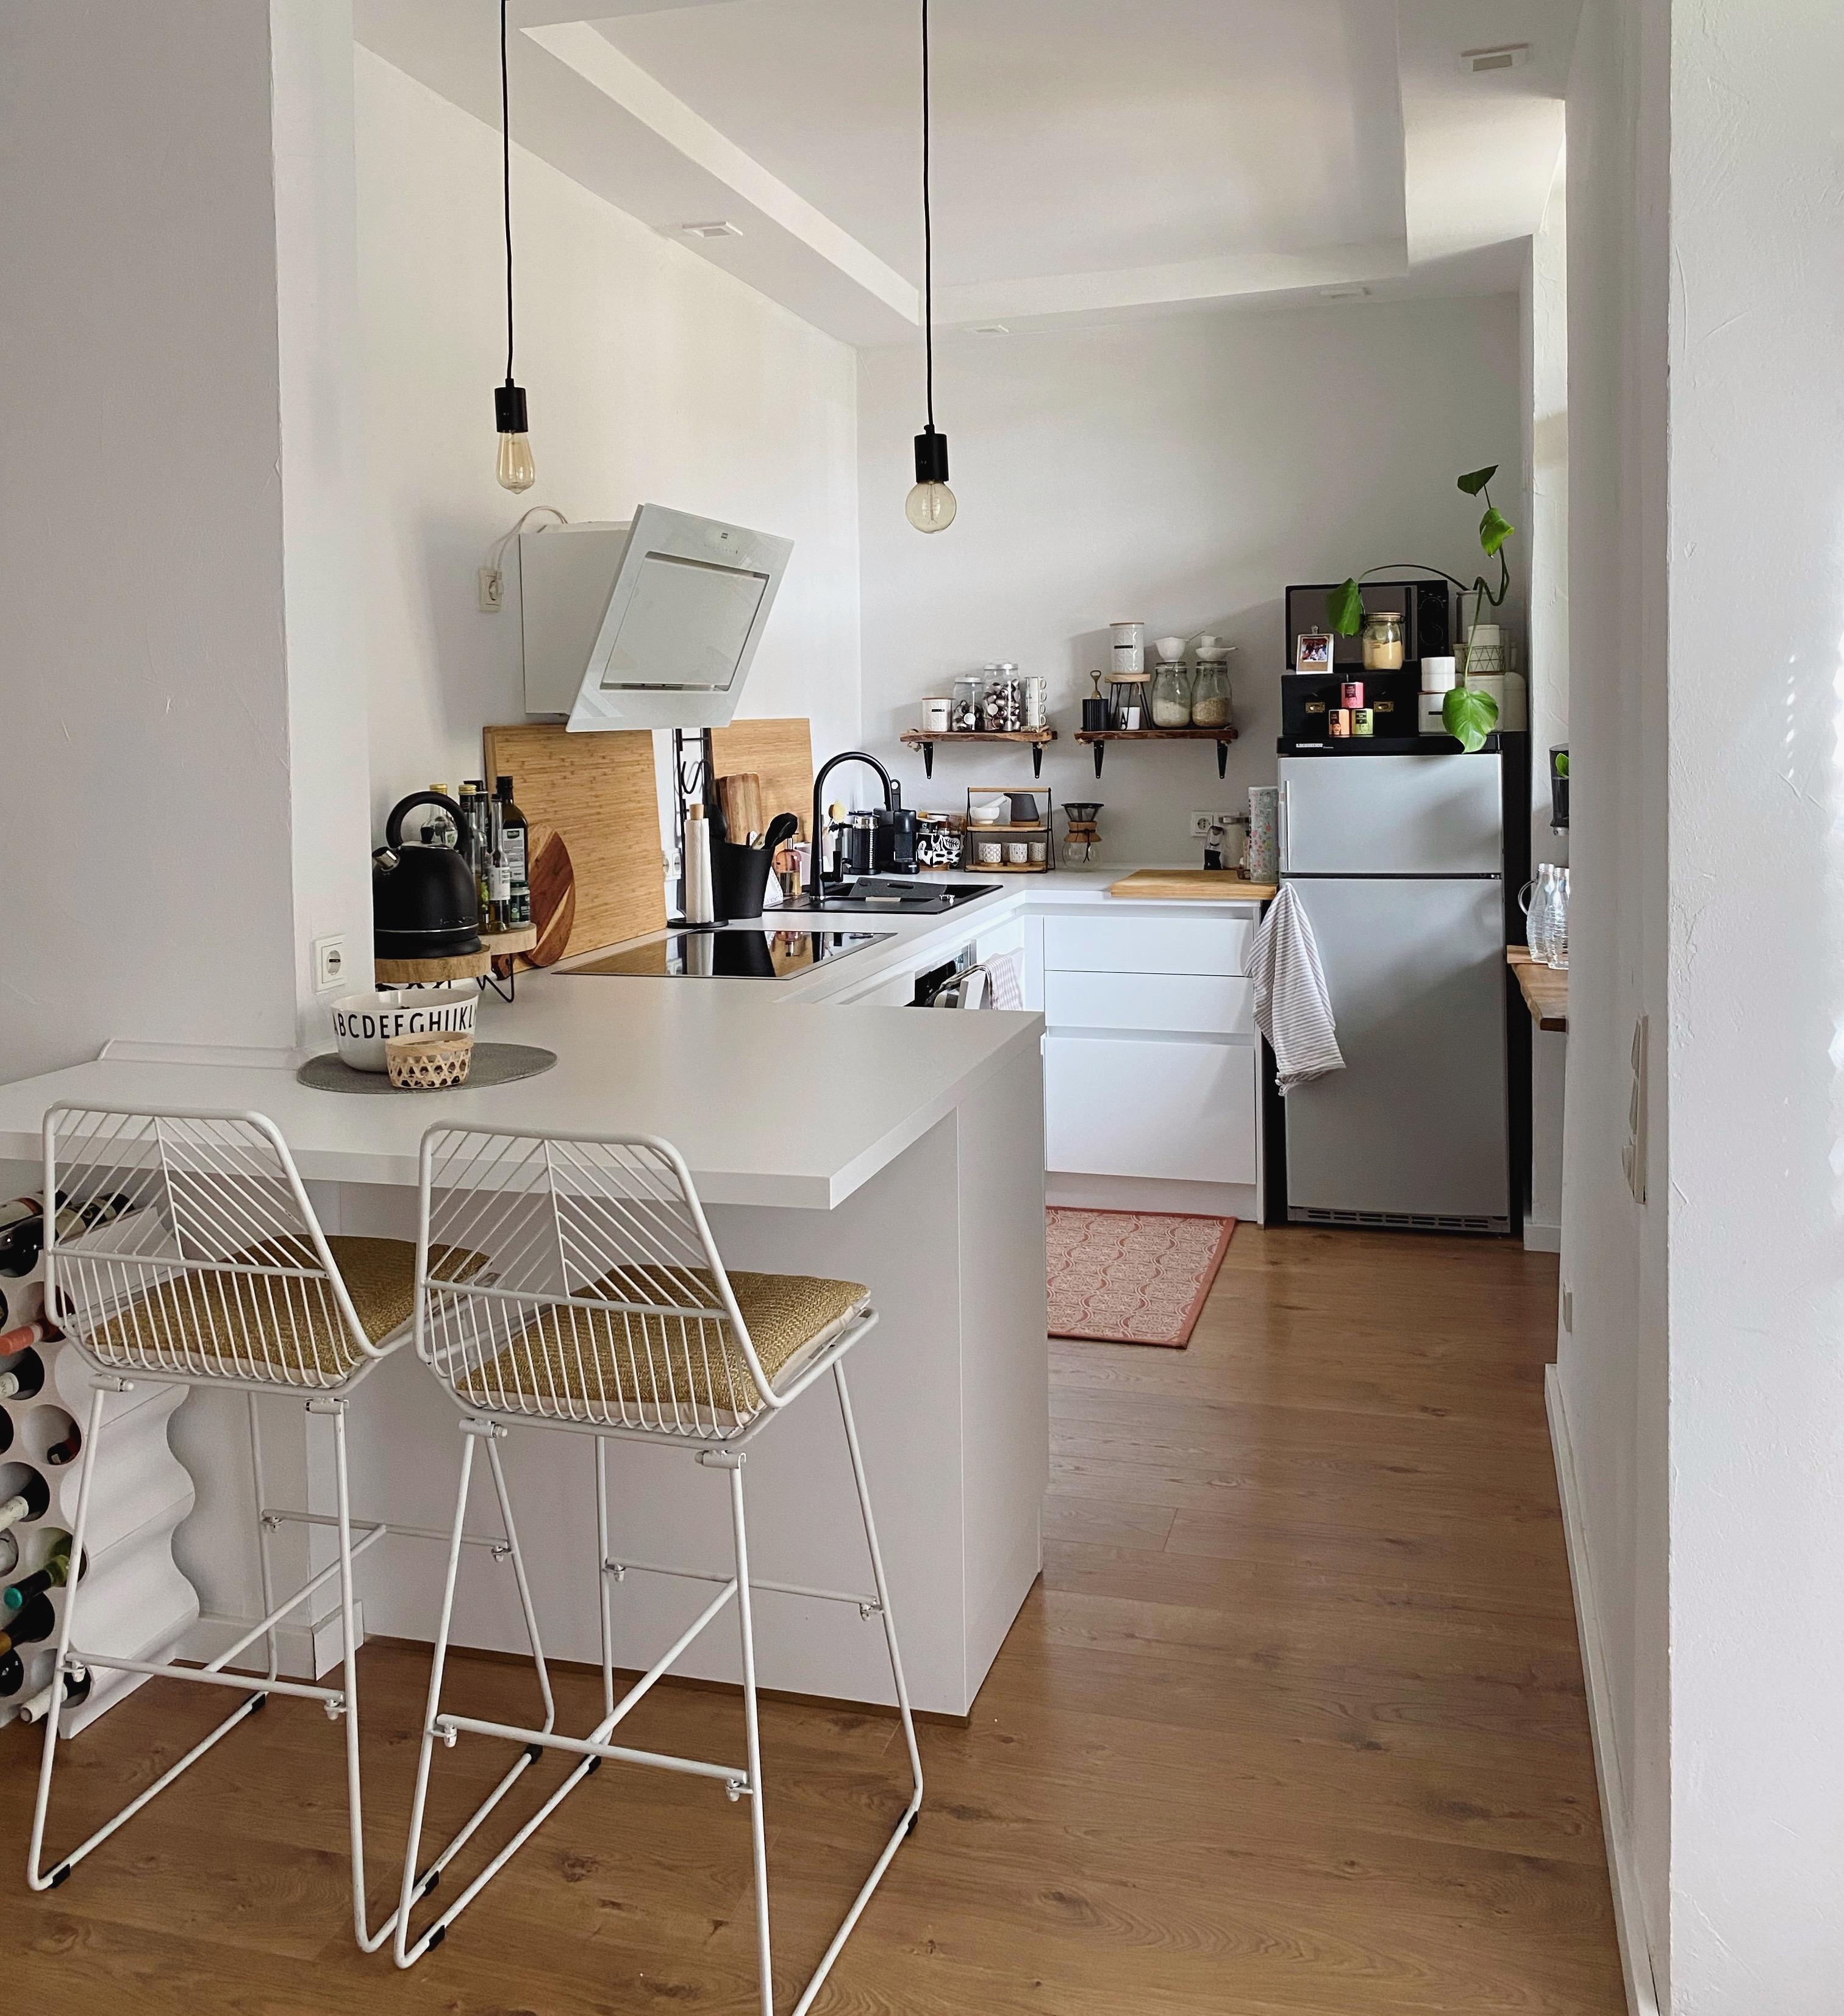 #Küchenglück #küche #kitchendesign #couchstyle #whitekitchen #barhocker #tresen #küchentresen #Interiordesign #kochen 